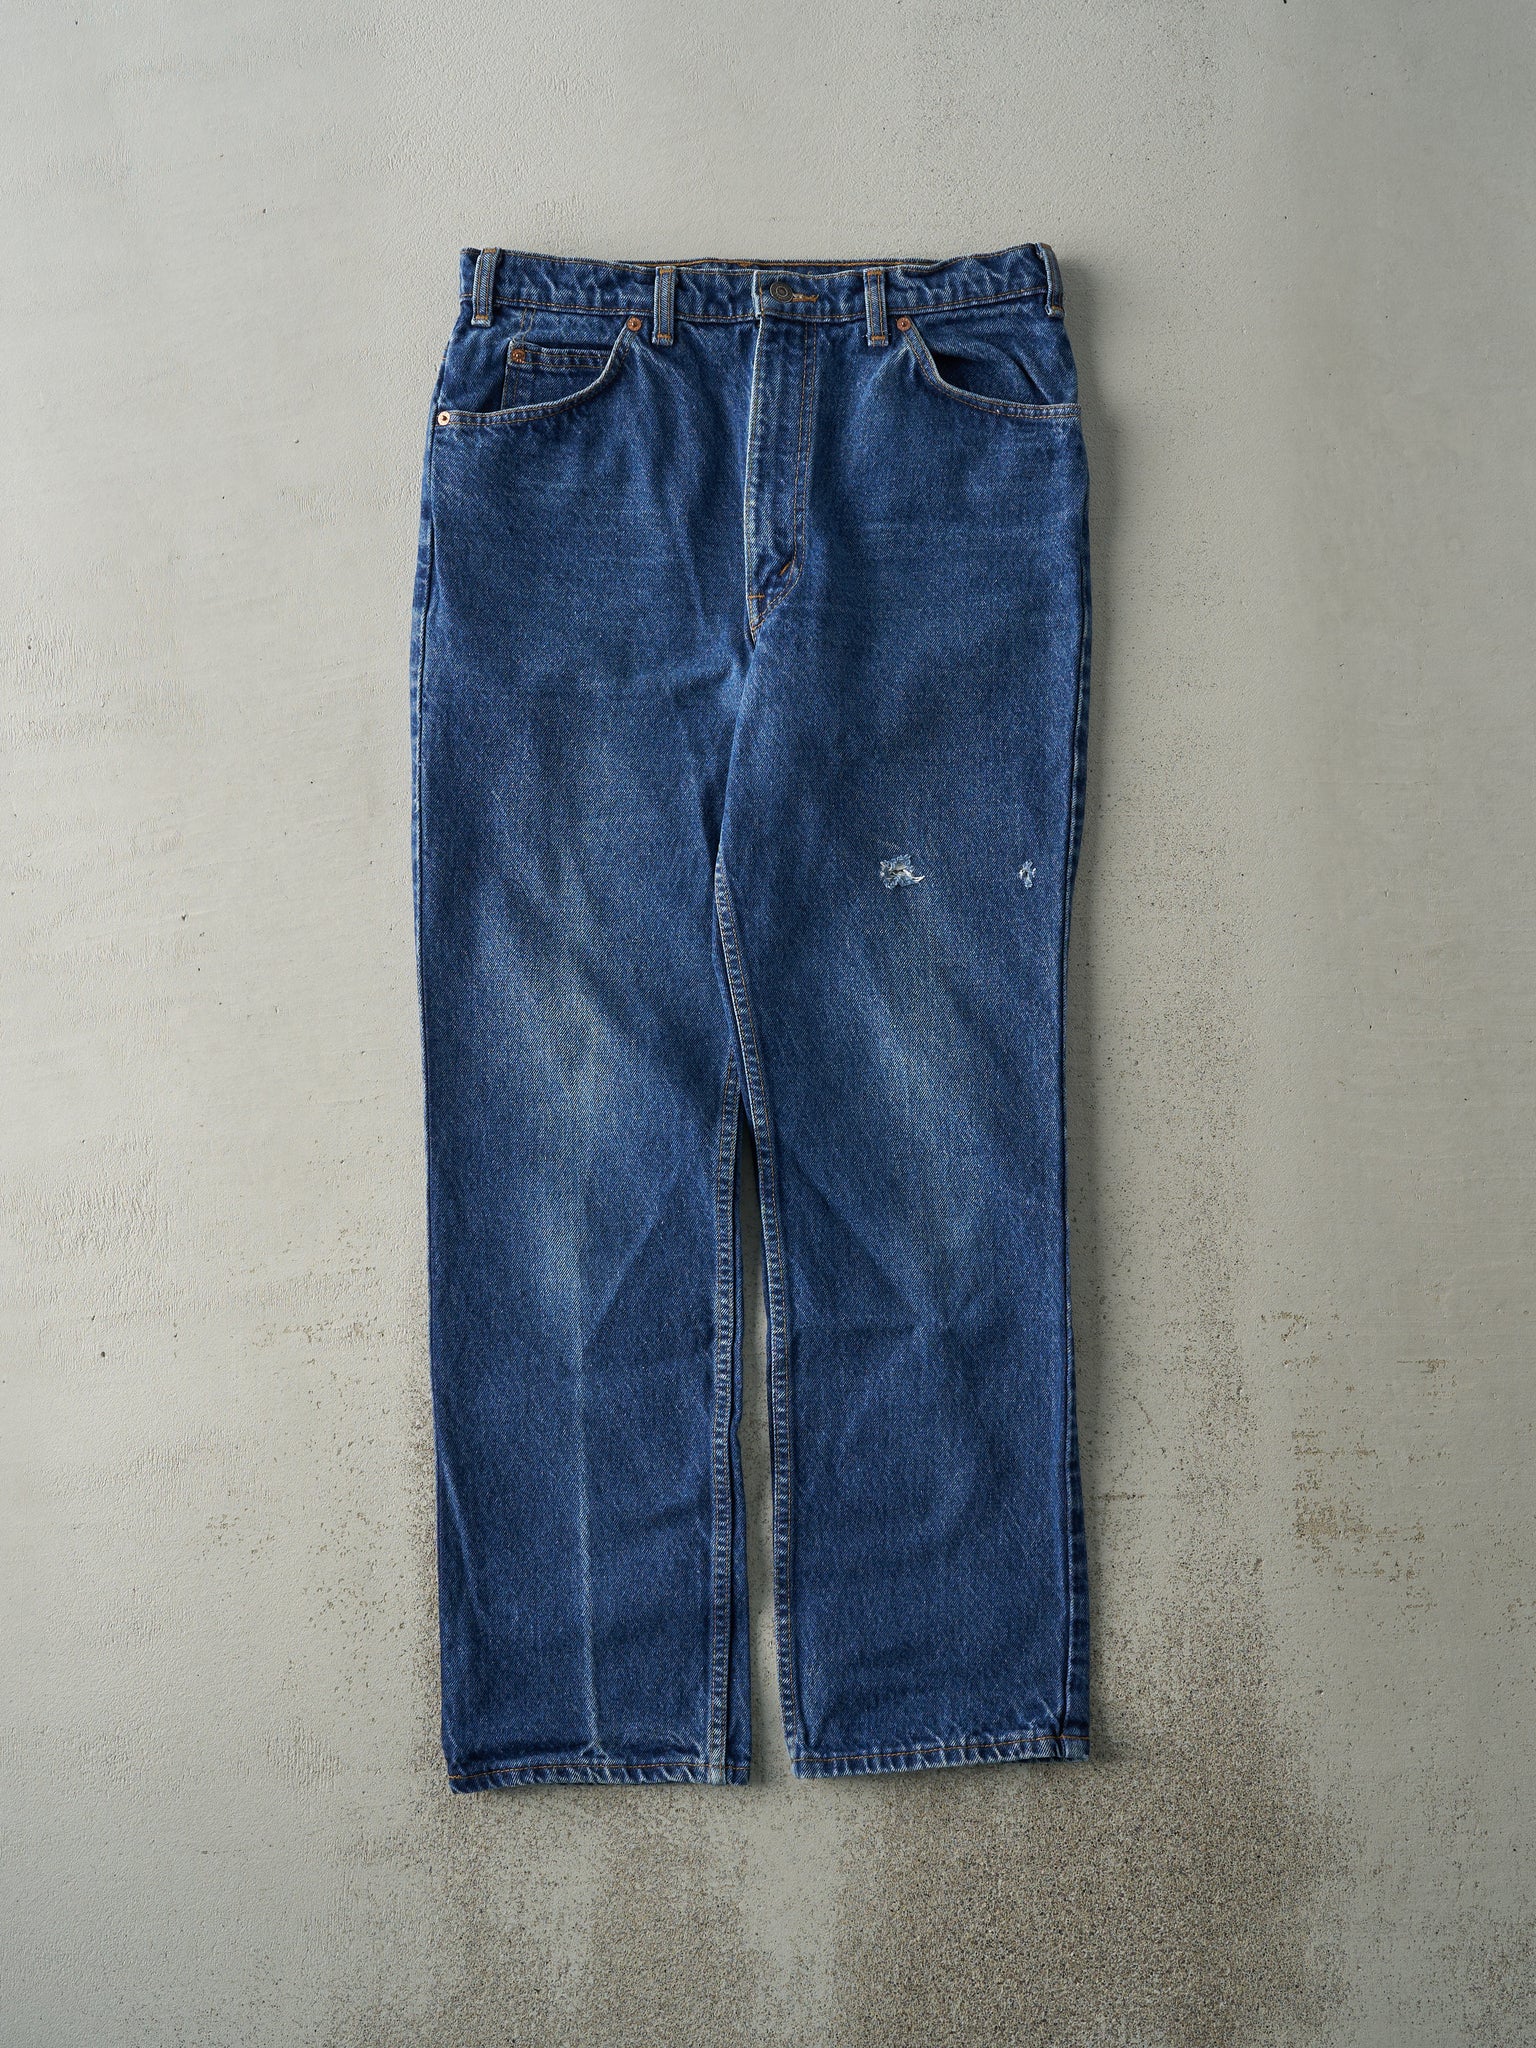 Vintage 80s Mid Wash Levi's 619 Orange Tab Jeans (33x30.5)